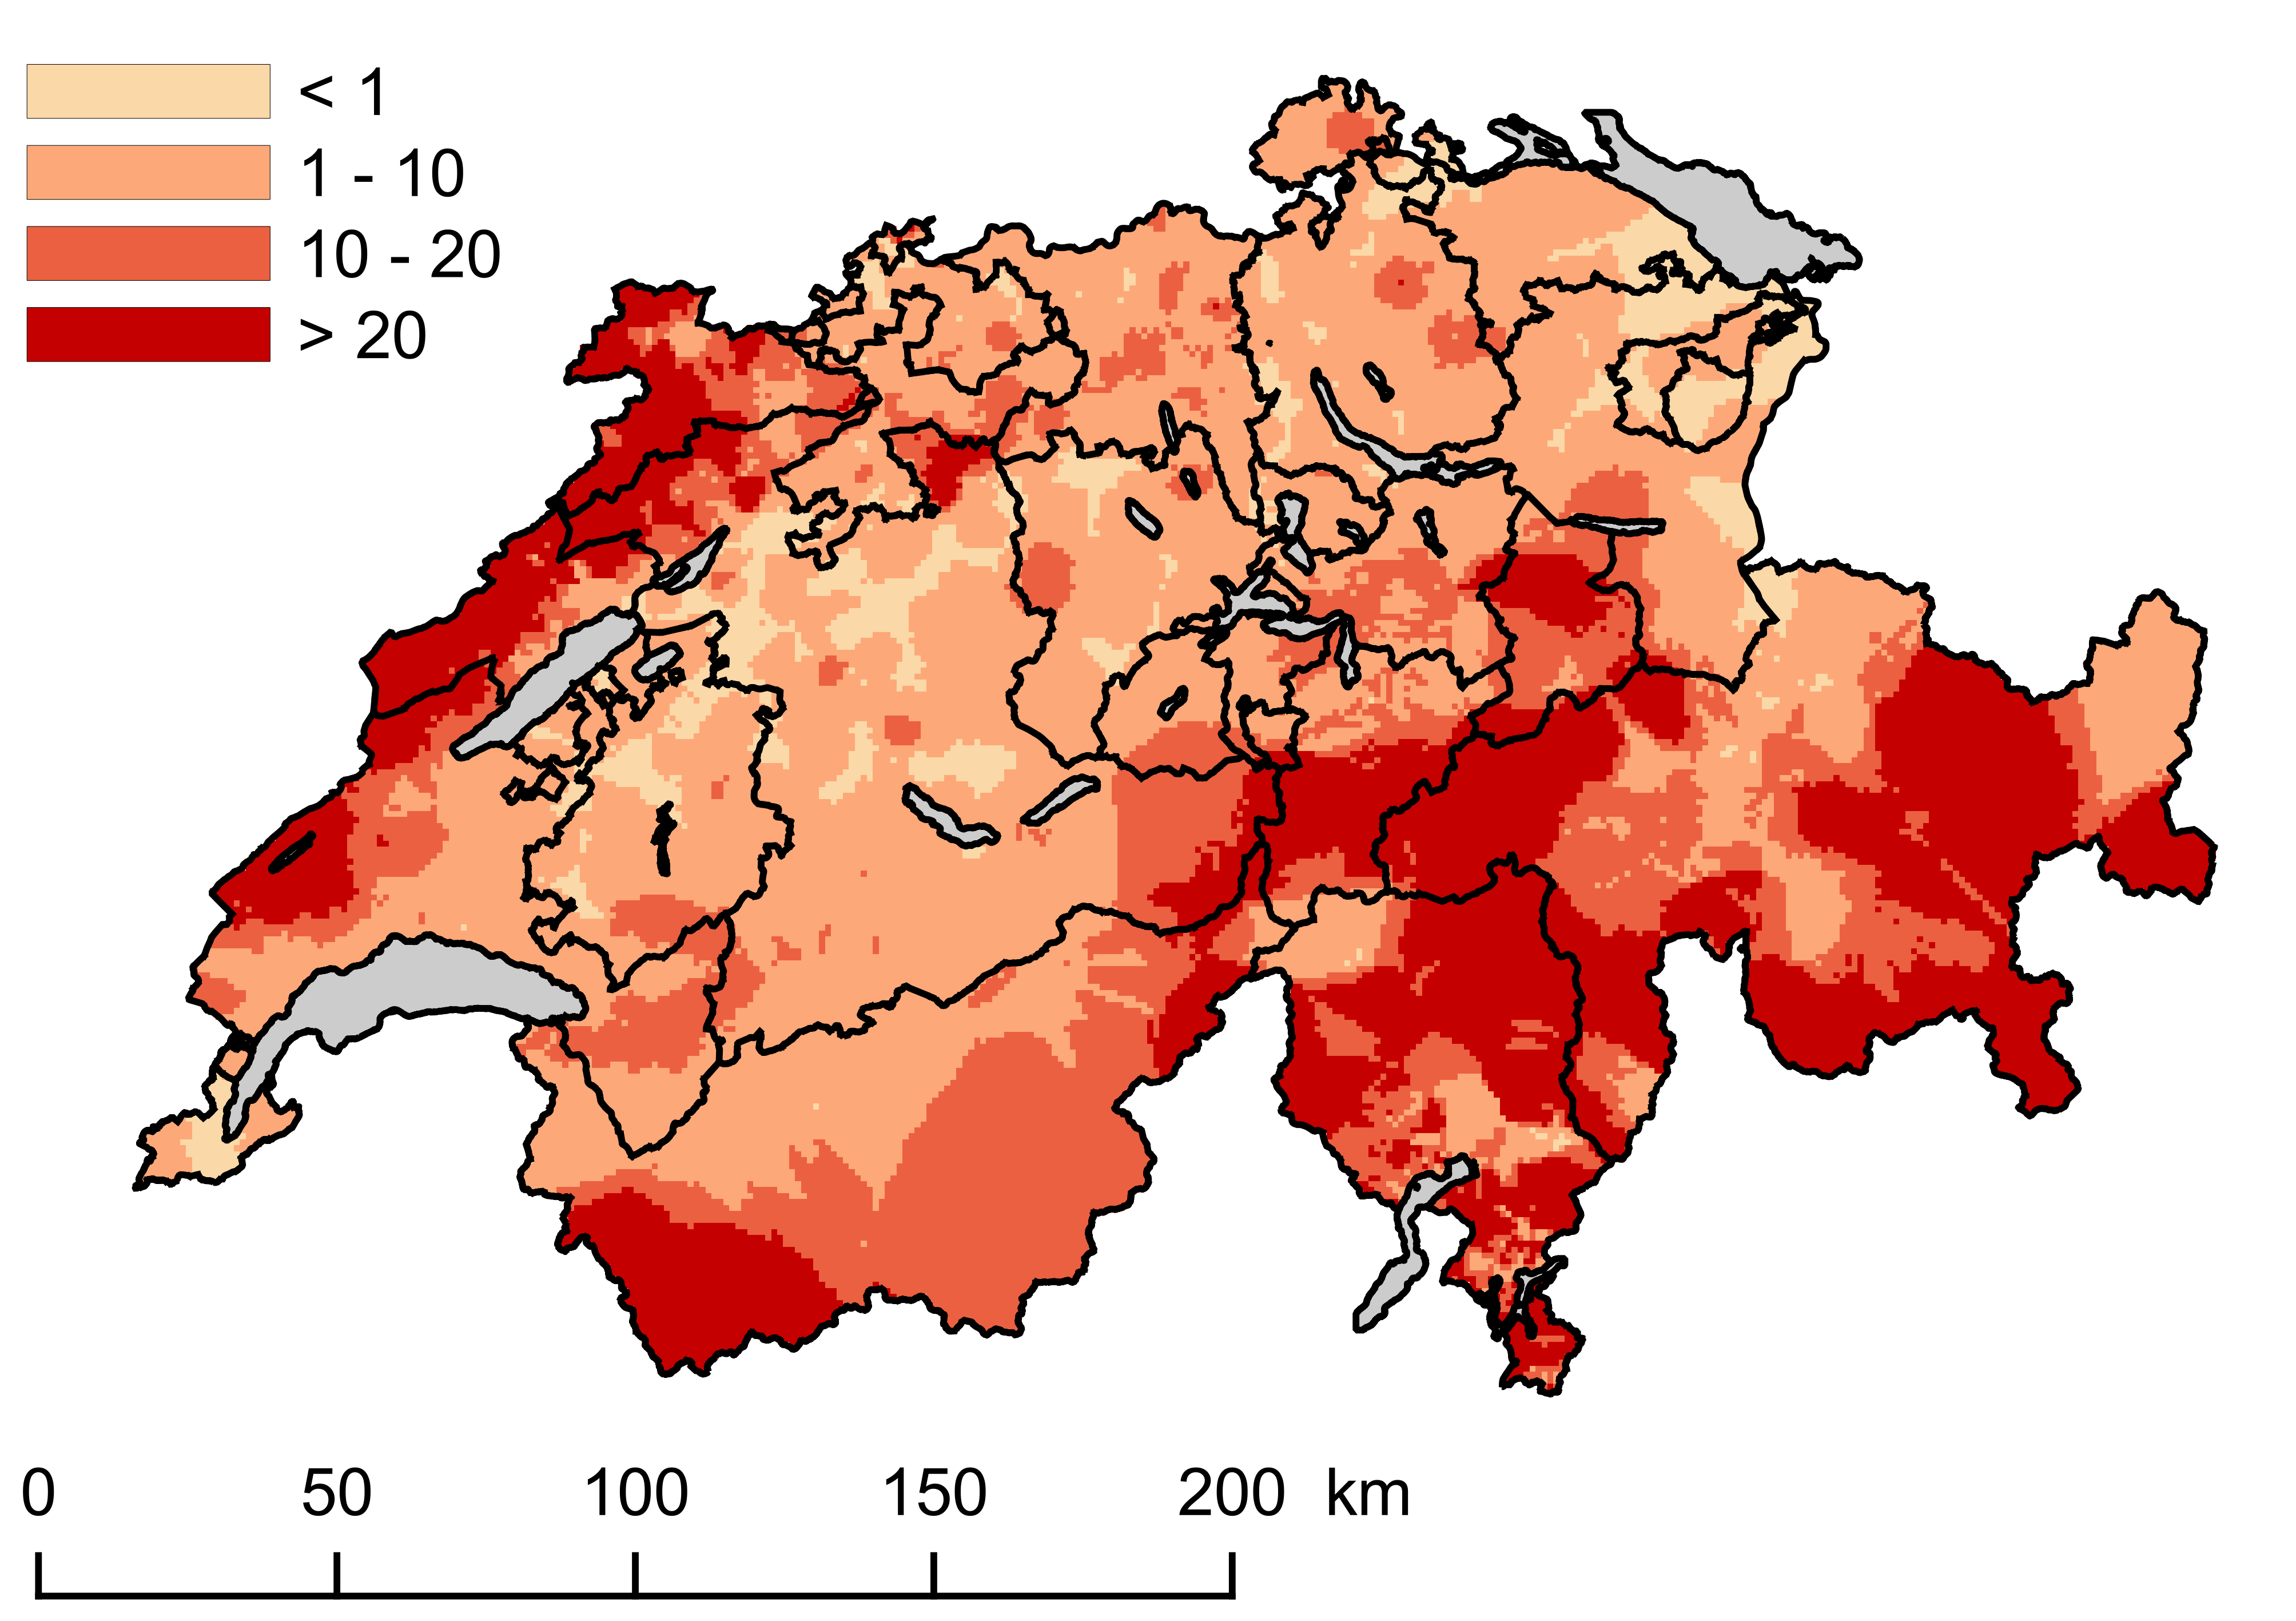 Radonkarte Schweiz